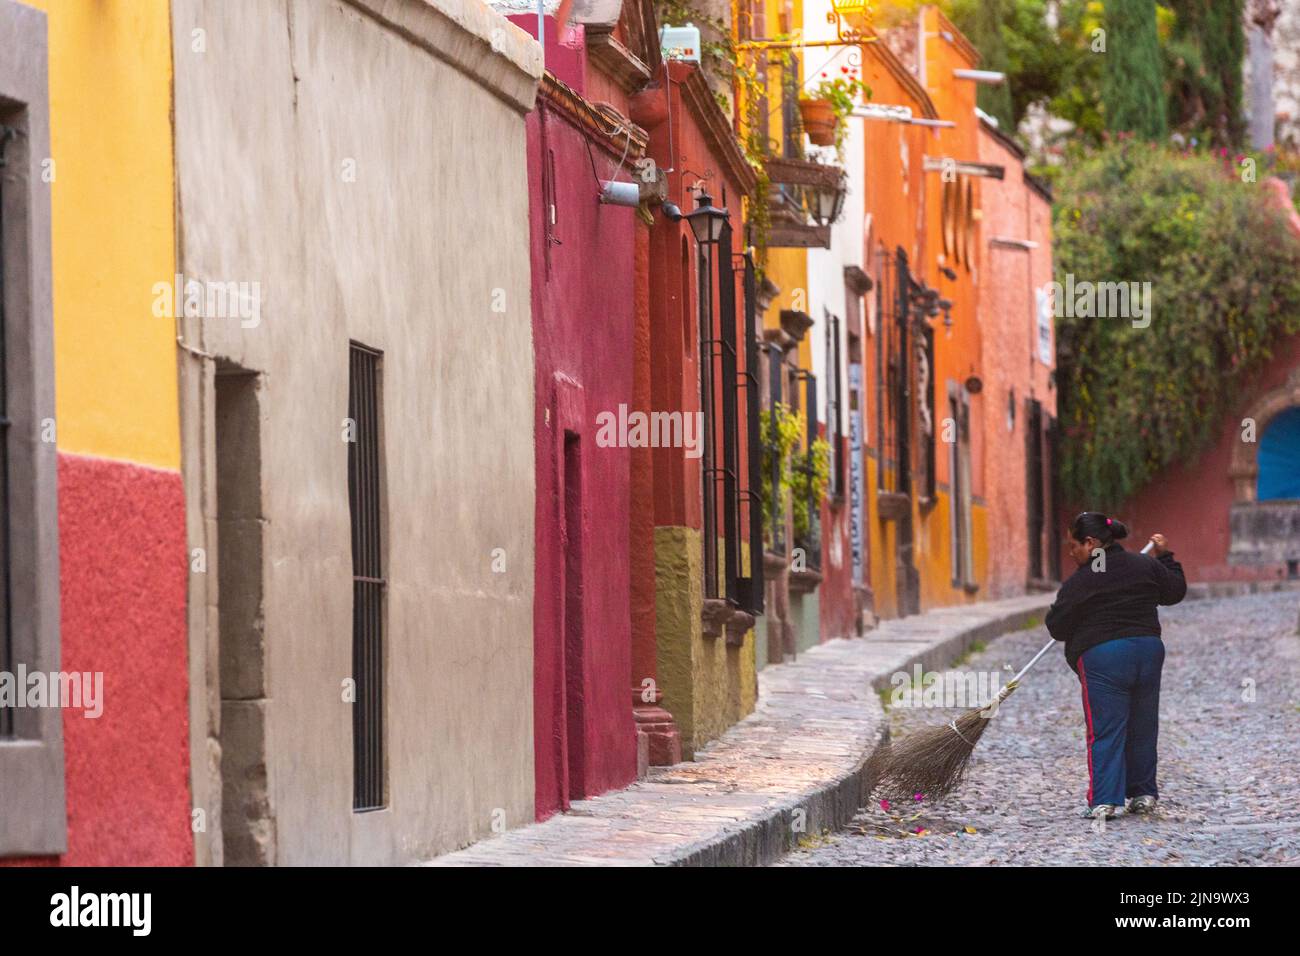 Un limpiador de calles barre las calles adoquinadas de la Calle Aldama temprano en la mañana en el centro histórico de la ciudad de San Miguel de Allende, México. Foto de stock